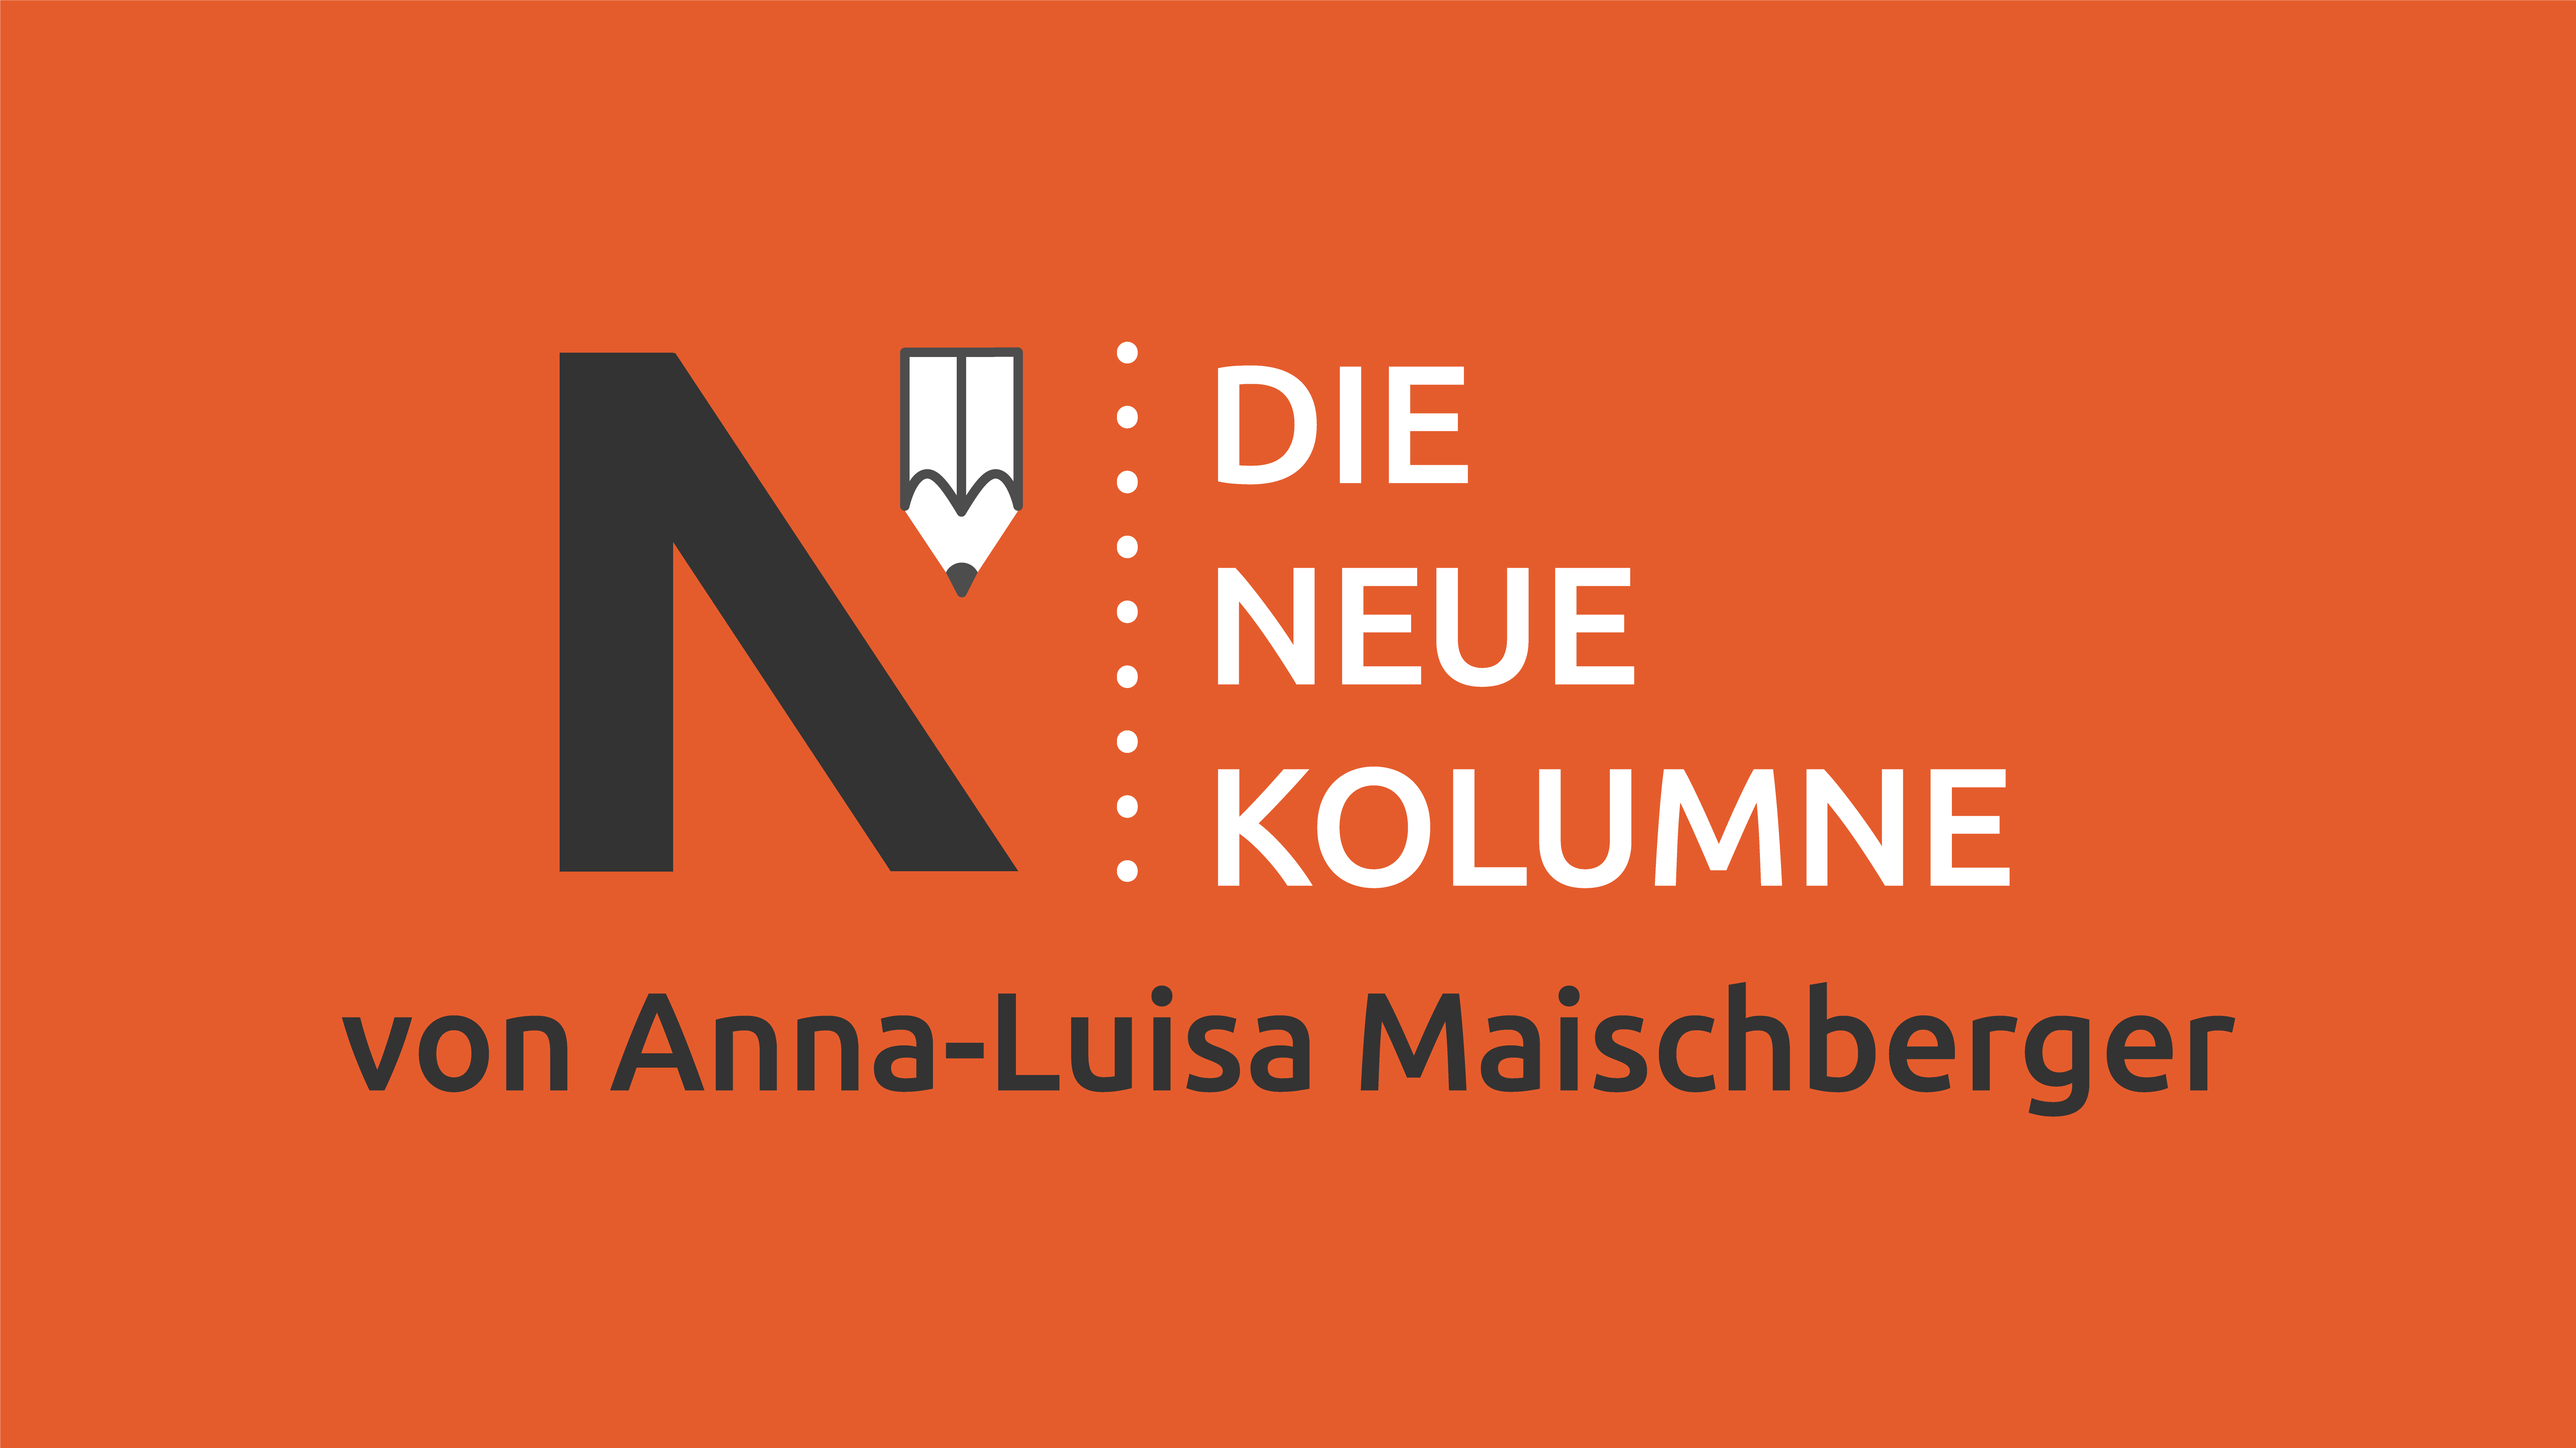 Das Logo von Die Neue Norm auf rotem Grund. Rechts davon steht: Die Neue Kolumne. Unten steht: Von Anna-Luisa Maischberger.